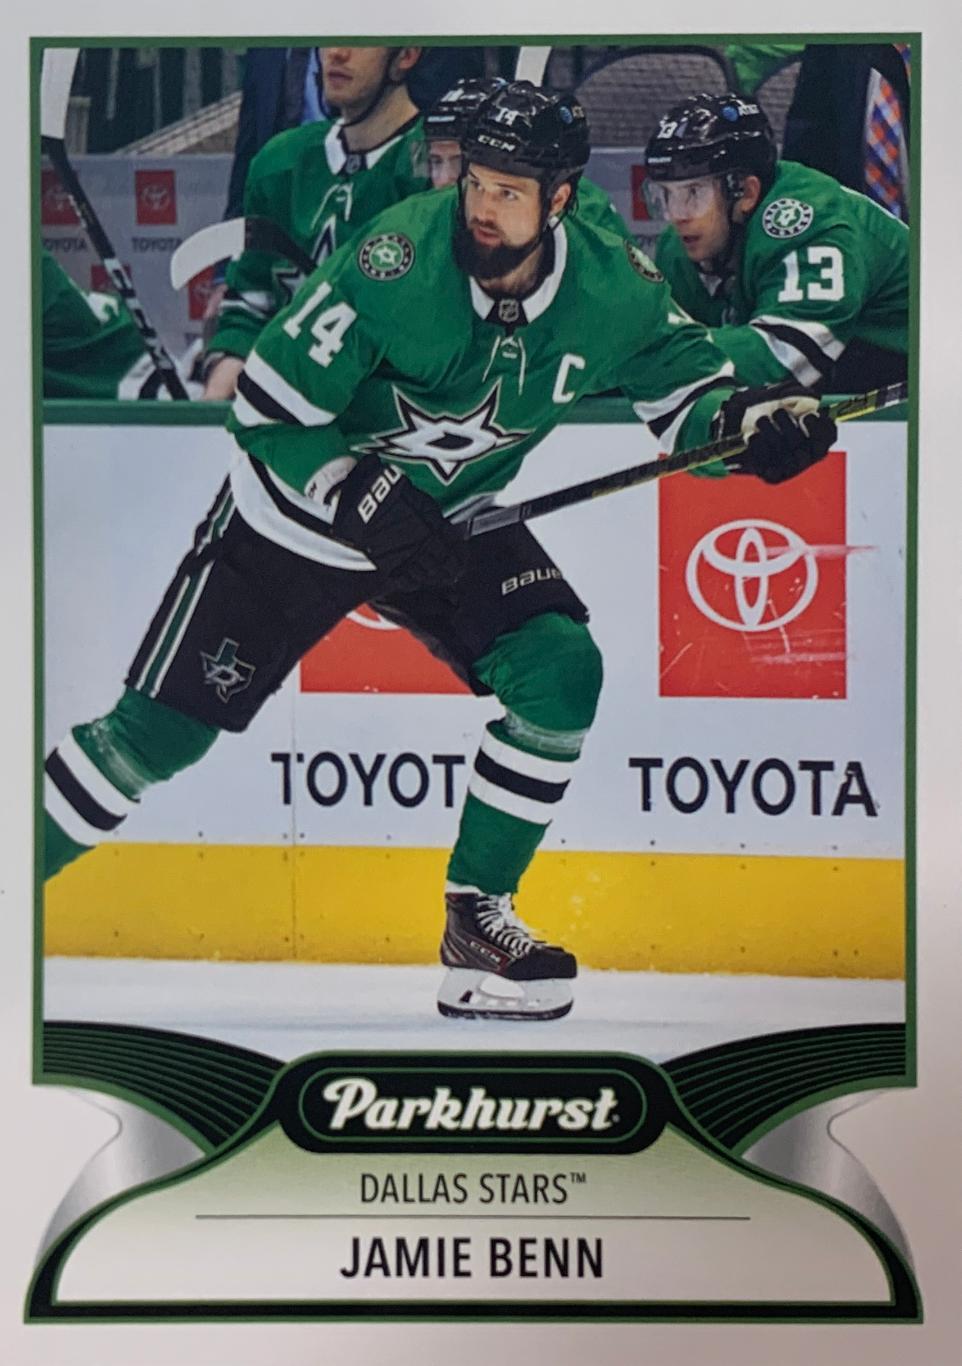 Хоккей. Карточка Jamie Benn - Джейми Бенн Dallas Stars - Даллас Старз НХЛ/NHL